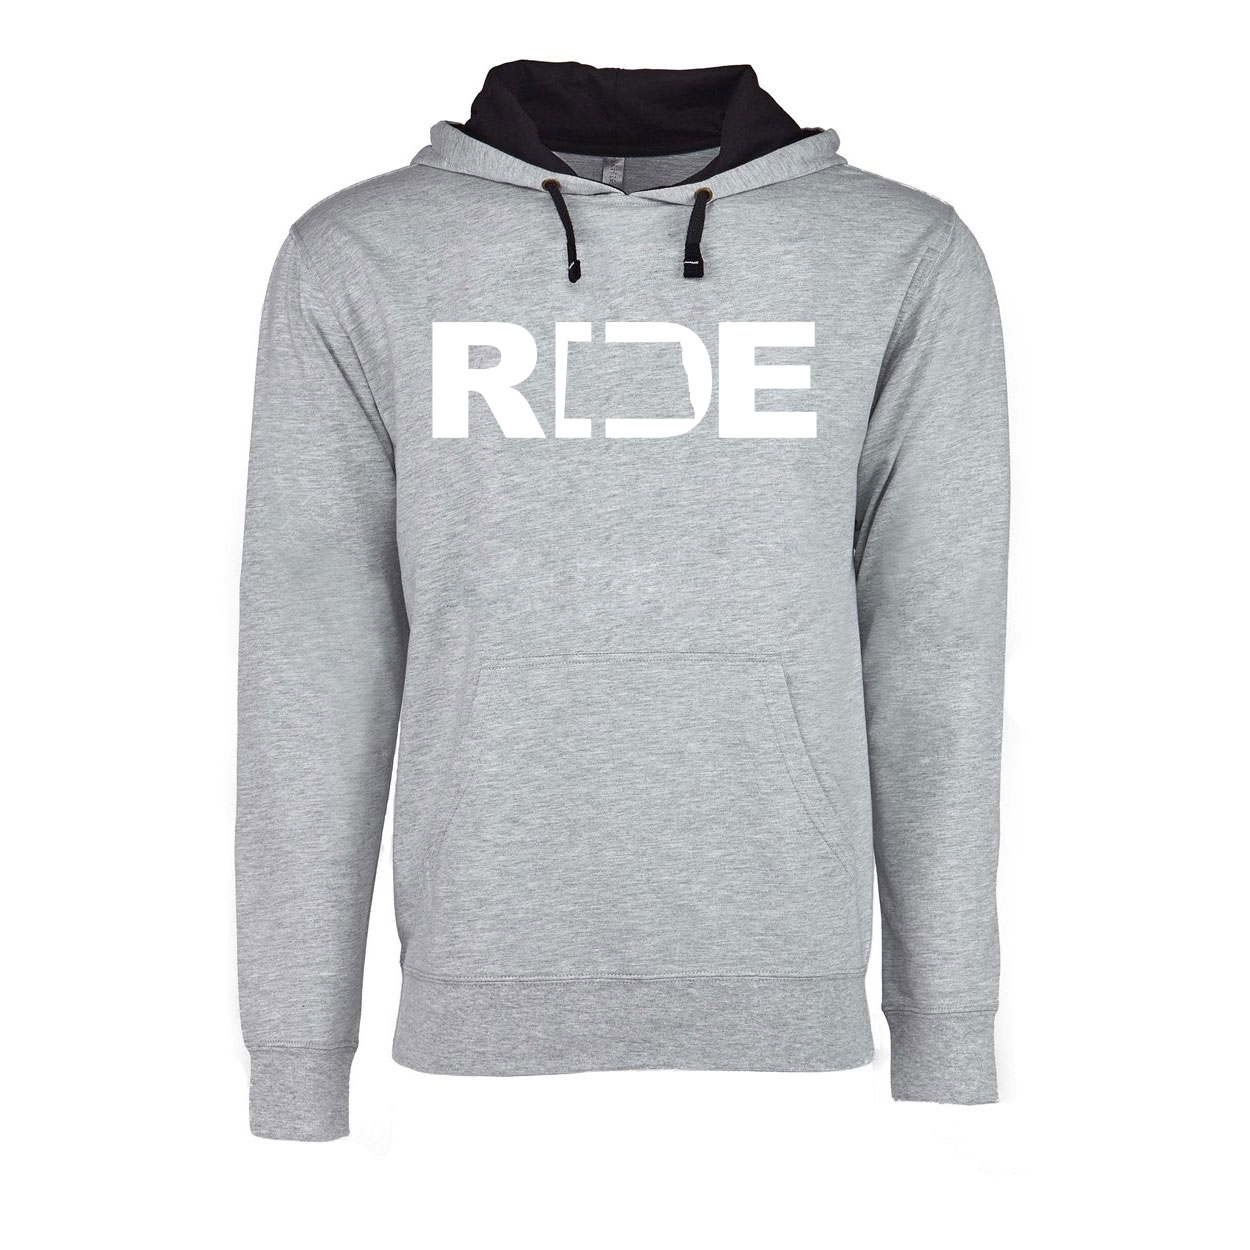 Ride North Dakota Classic Lightweight Sweatshirt Heather Gray/Black (White Logo)